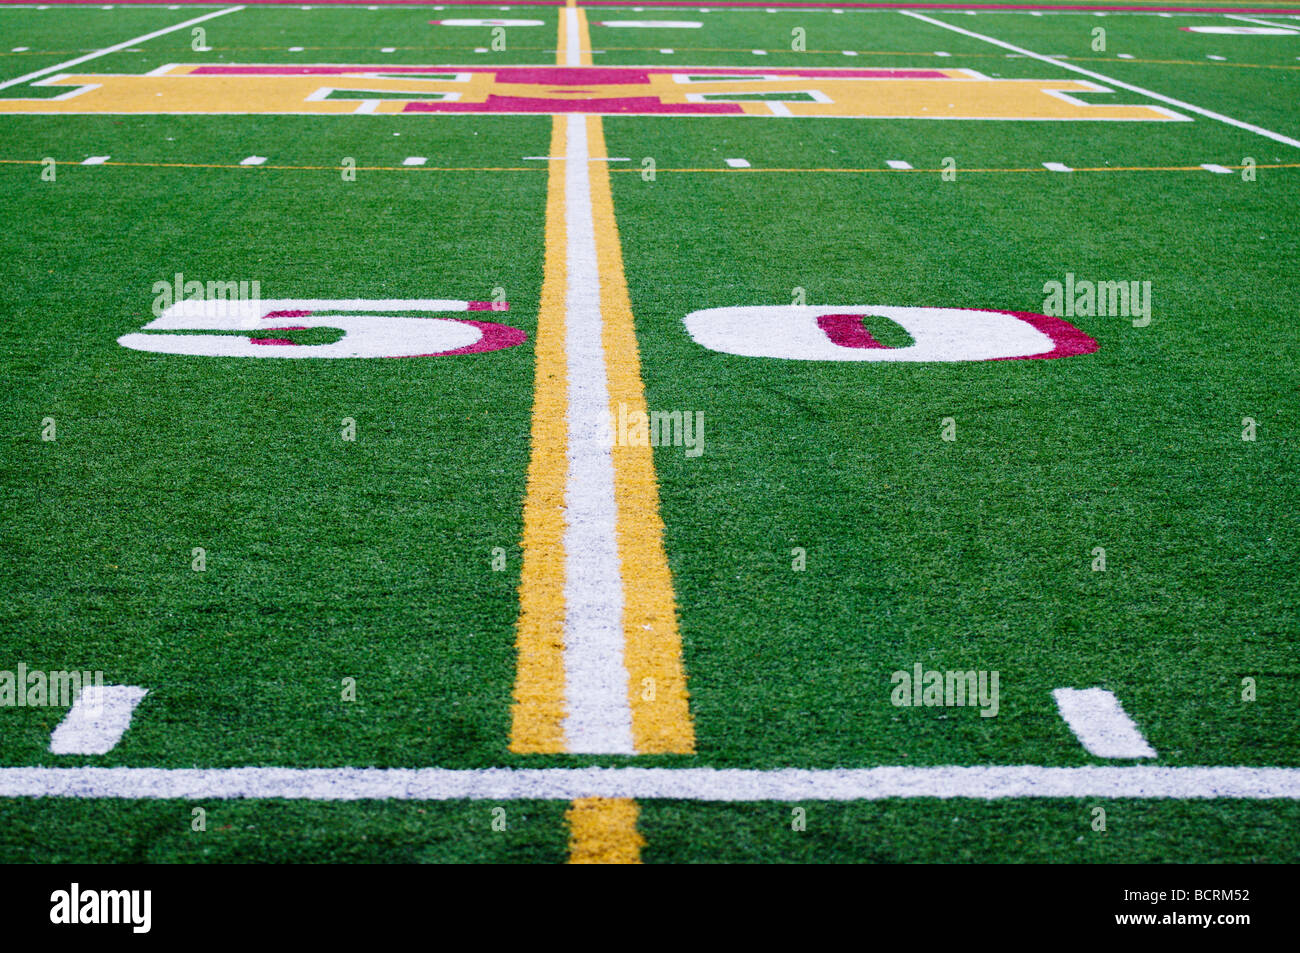 50 yard linea su un americano di alta scuola calcio Campo da gioco. Foto Stock